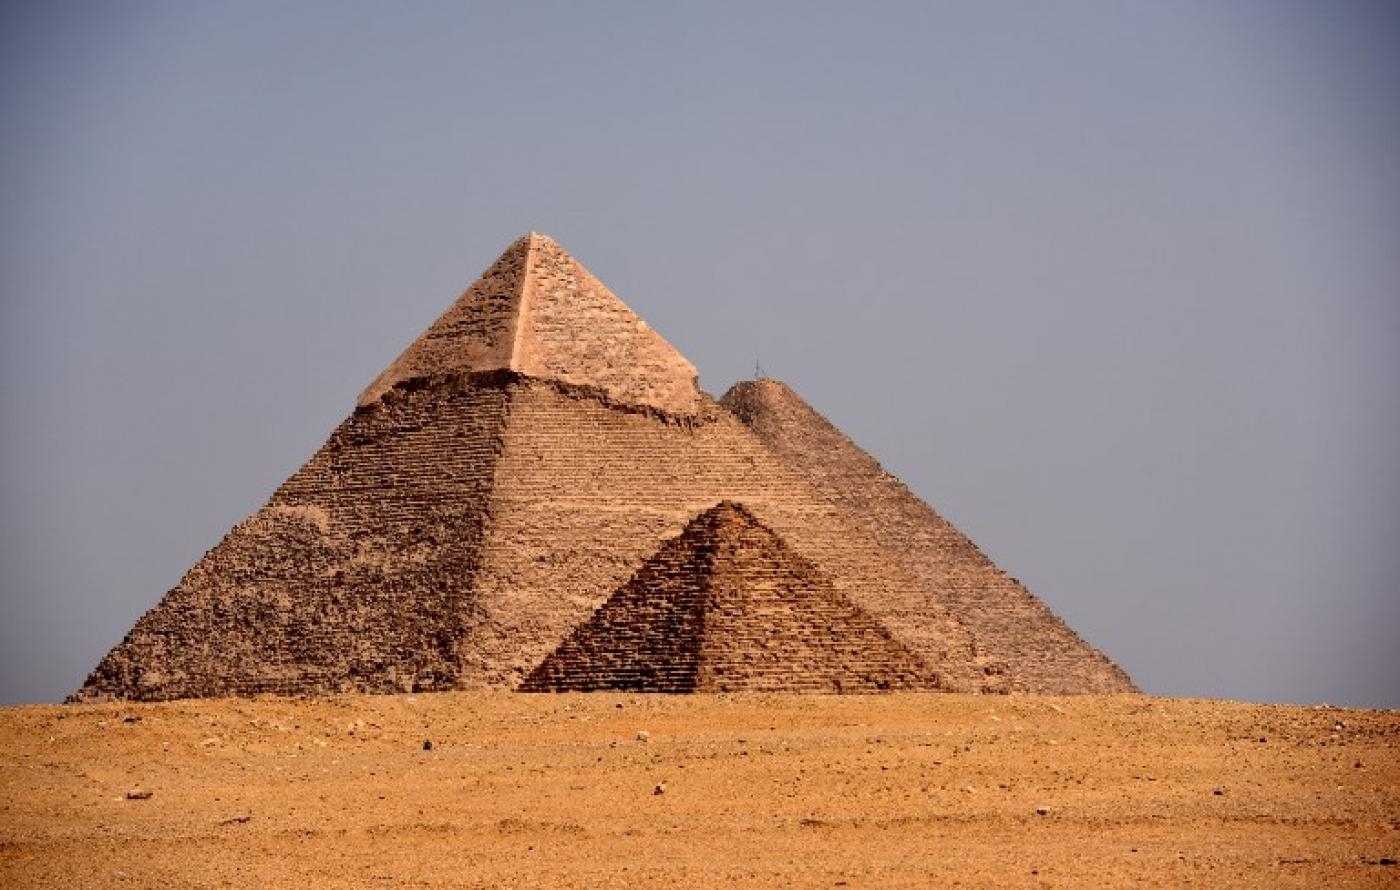 Les pyramides d’Égypte, première destination touristique du pays et dernier site encore debout parmi les sept merveilles du monde antique (AFP)